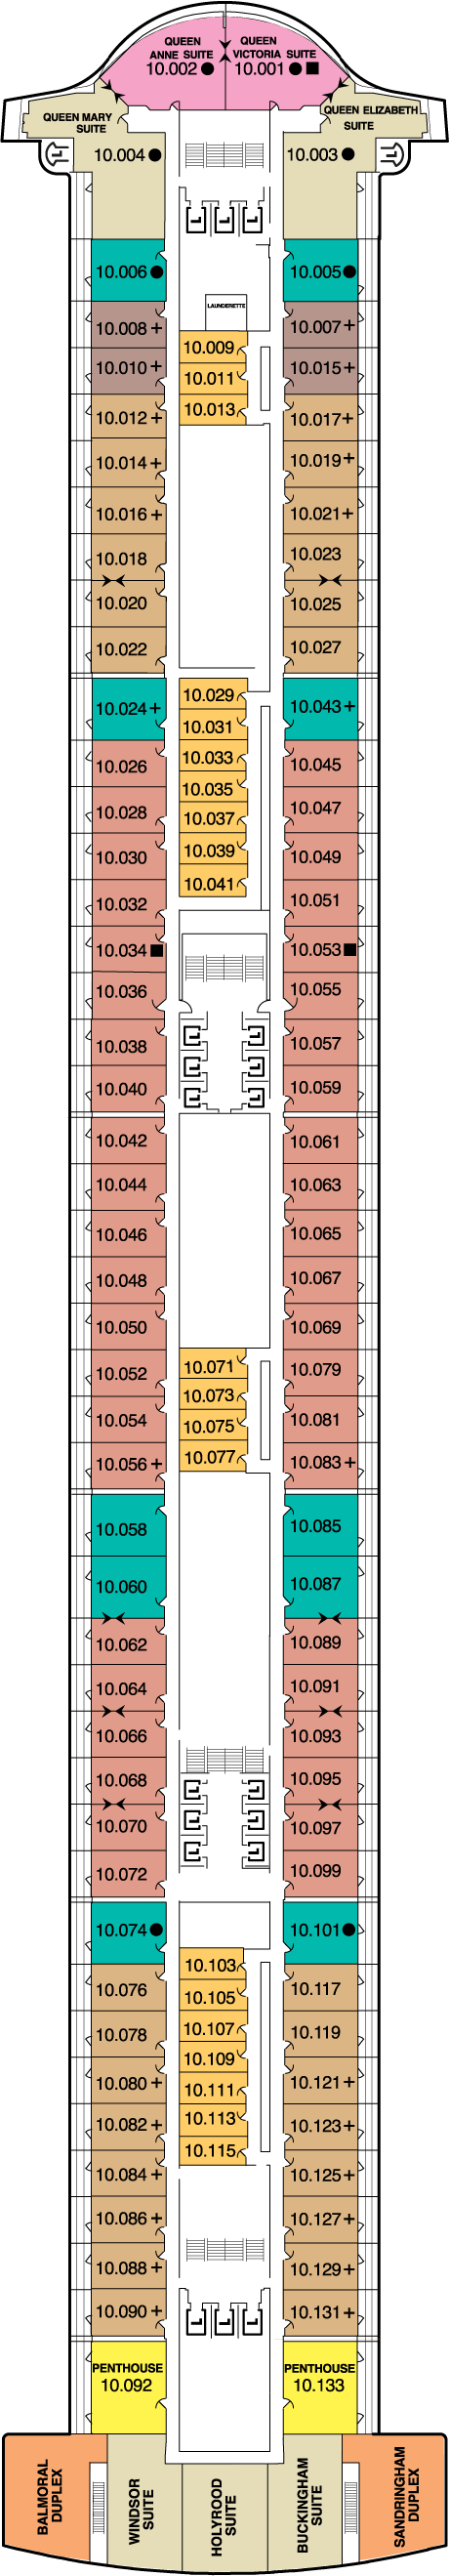 Deck Ten Deck Plan